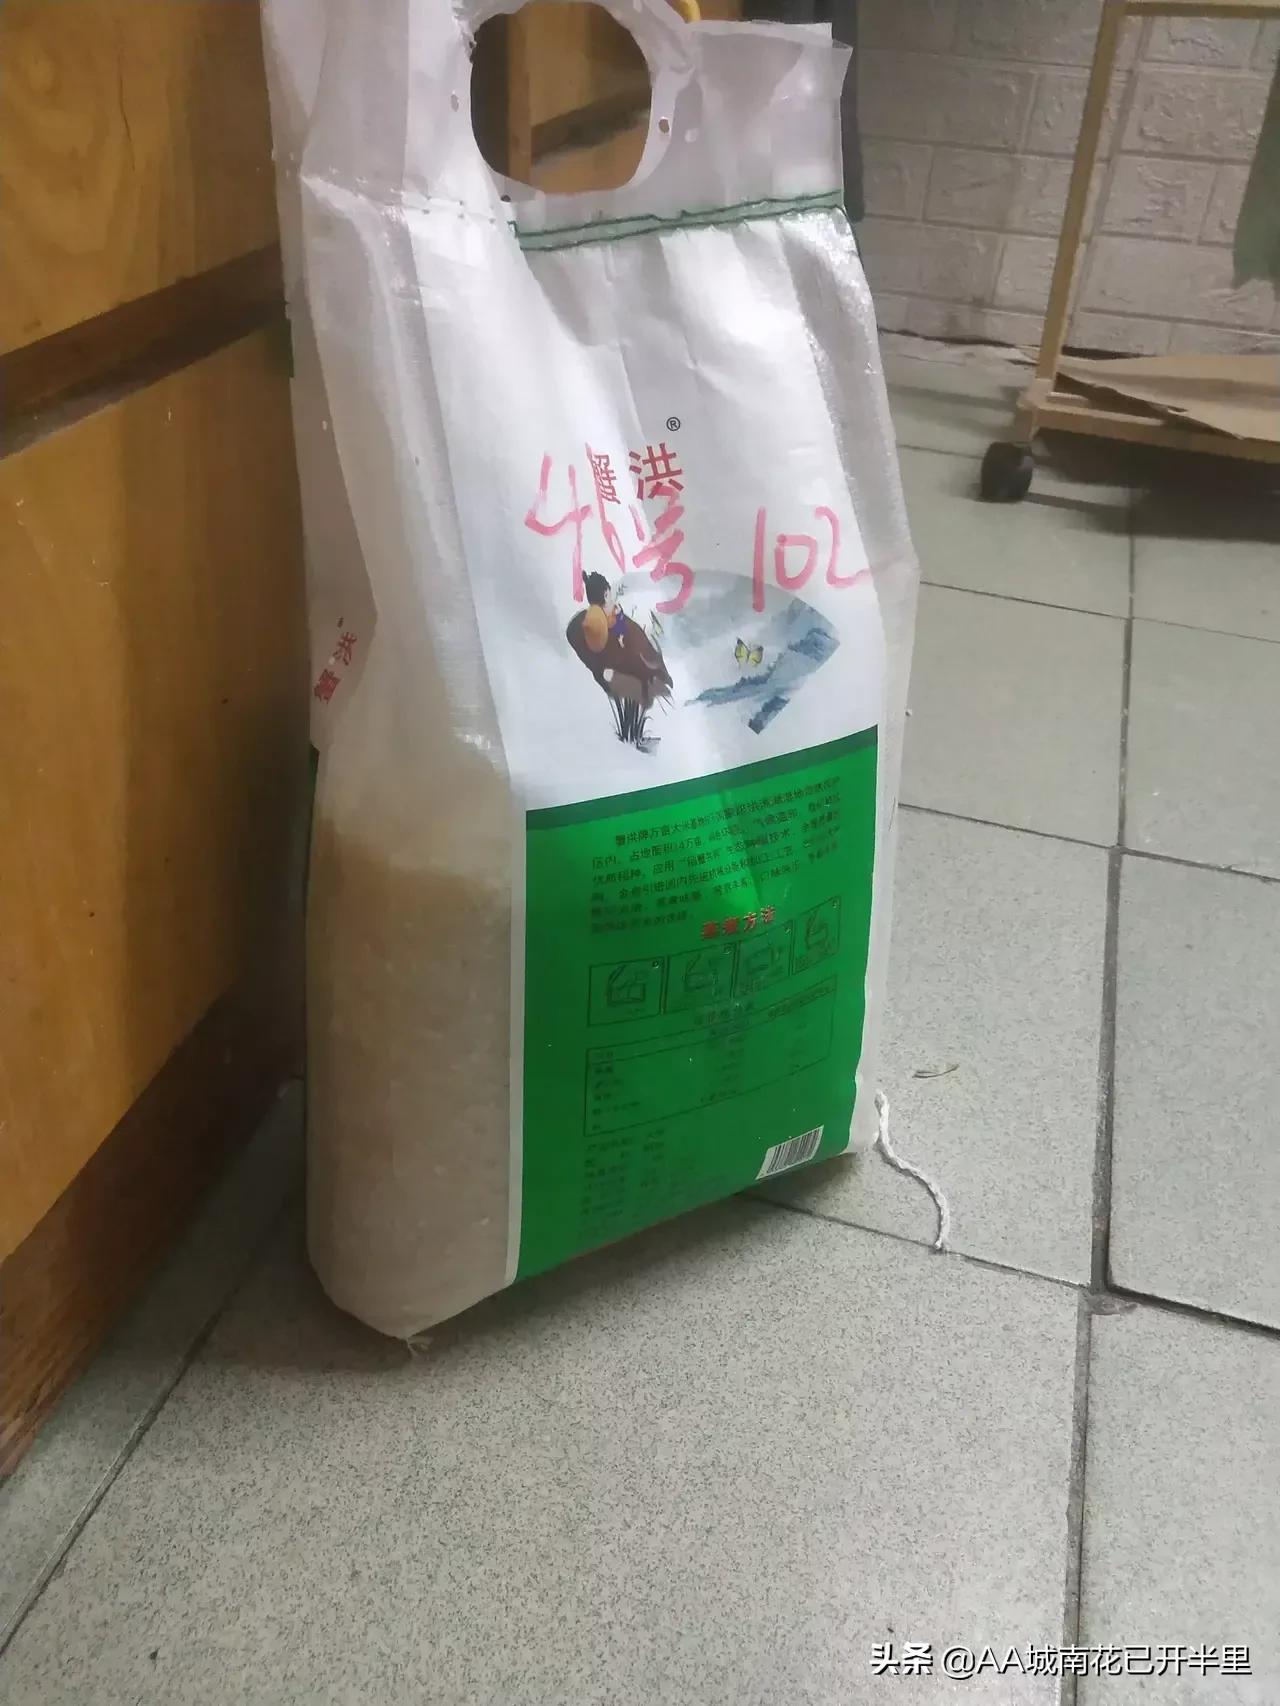 疫情上海小区：可乐可换万物，烟酒属硬通货，鸡蛋面粉持续见涨